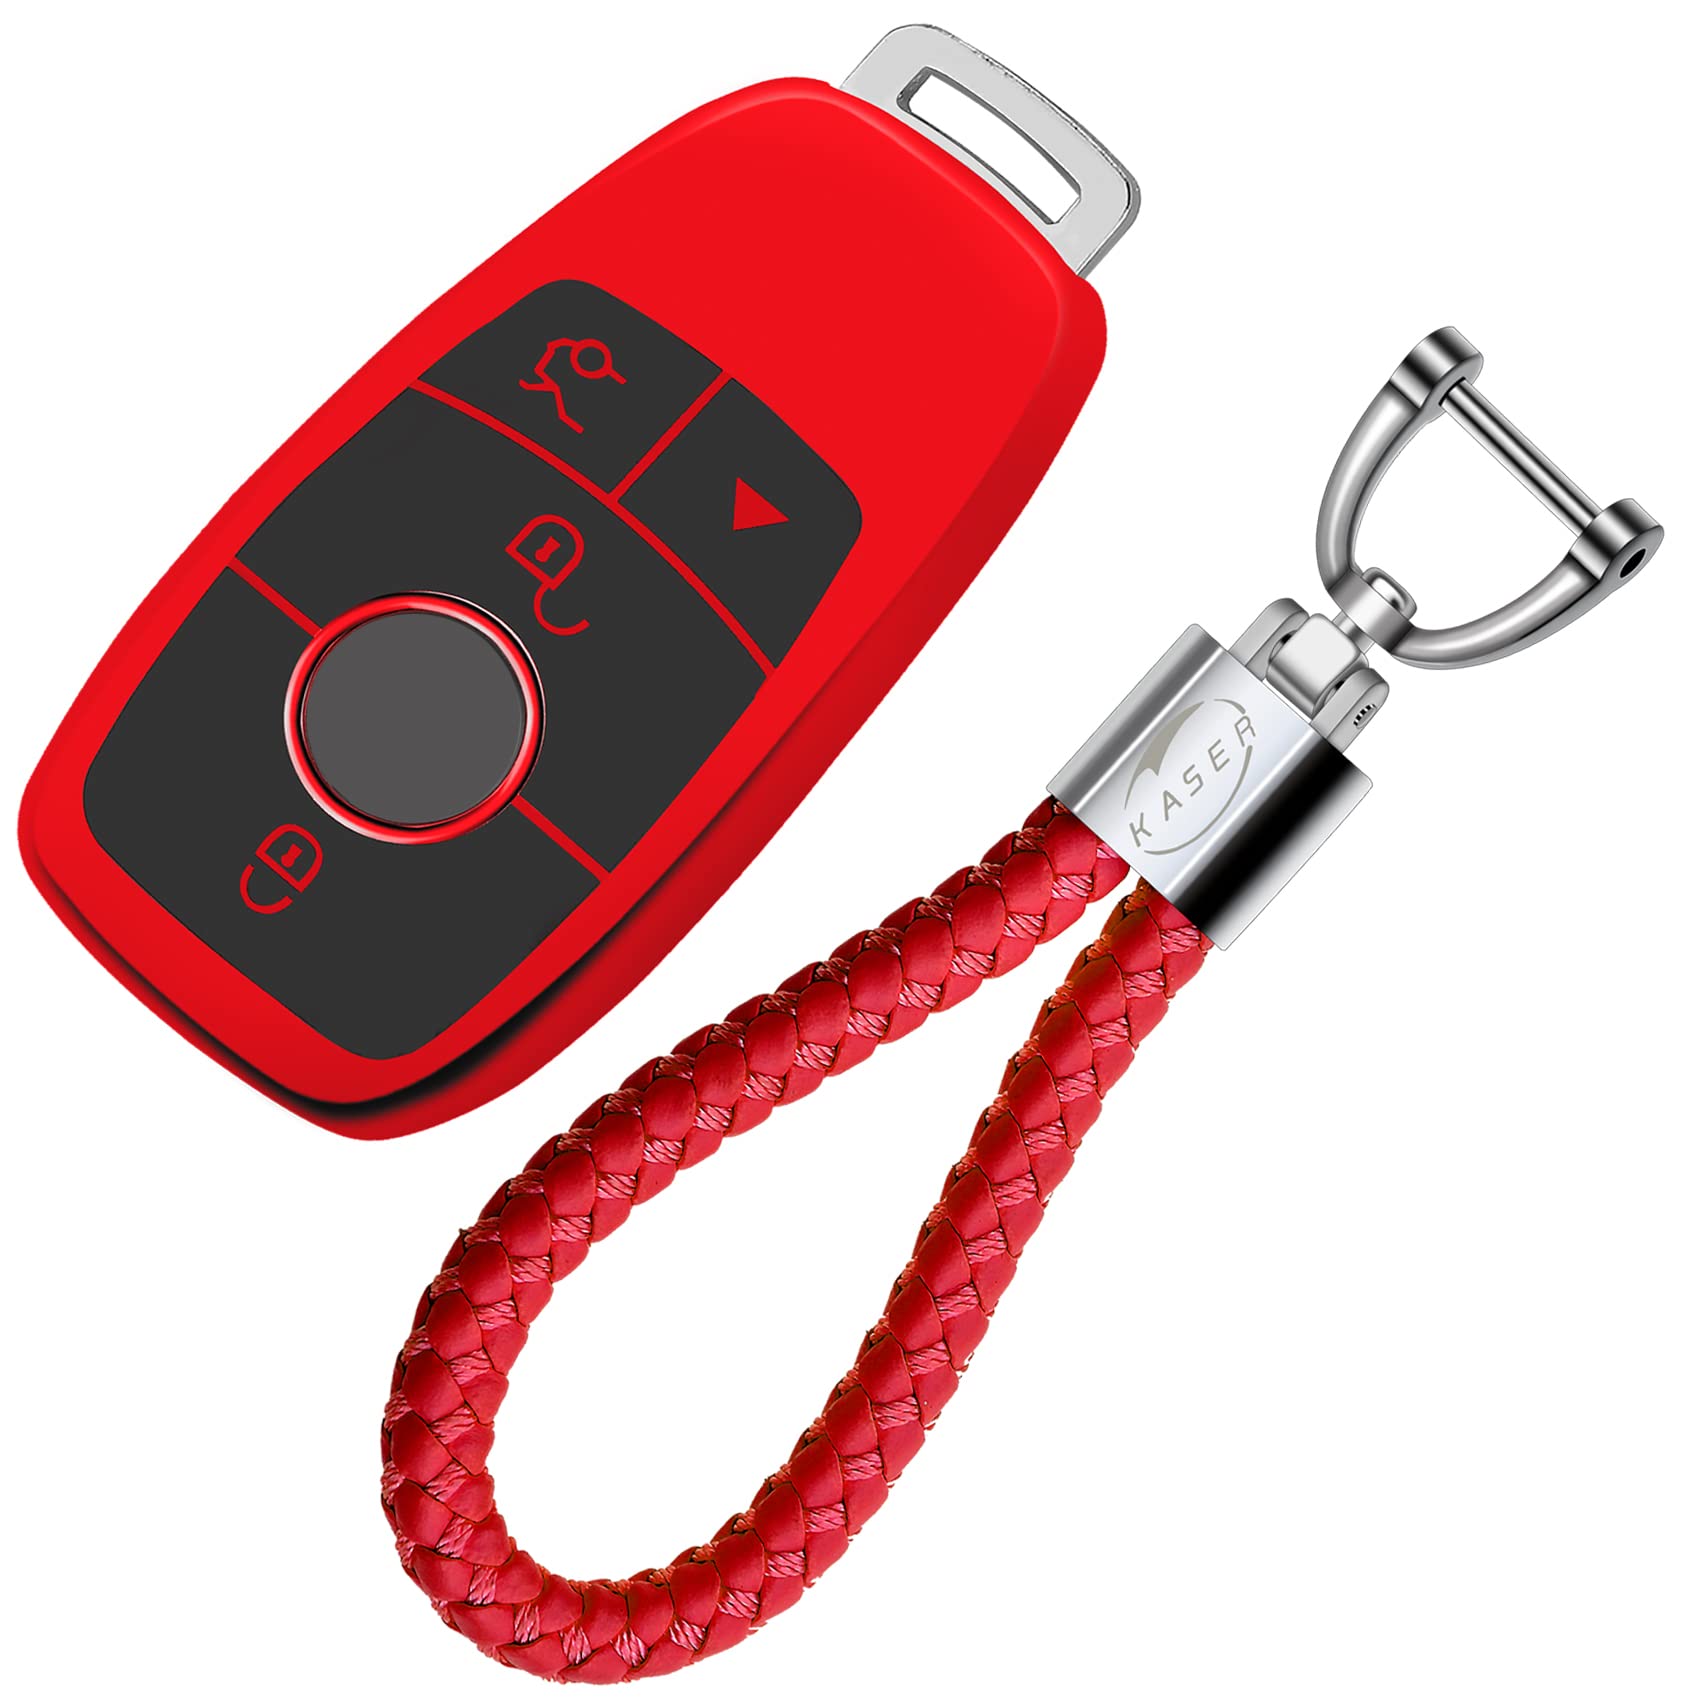 KASER Autoschlüssel Hülle kompatibel für Mercedes Schlüssel Classe S A B C E CLA CLK GLA GLC W213 Schlüsselanhänger mit Abdeckung Silikon Schutzhülle für Fernbedienung Keyless (Rot) von Kaser